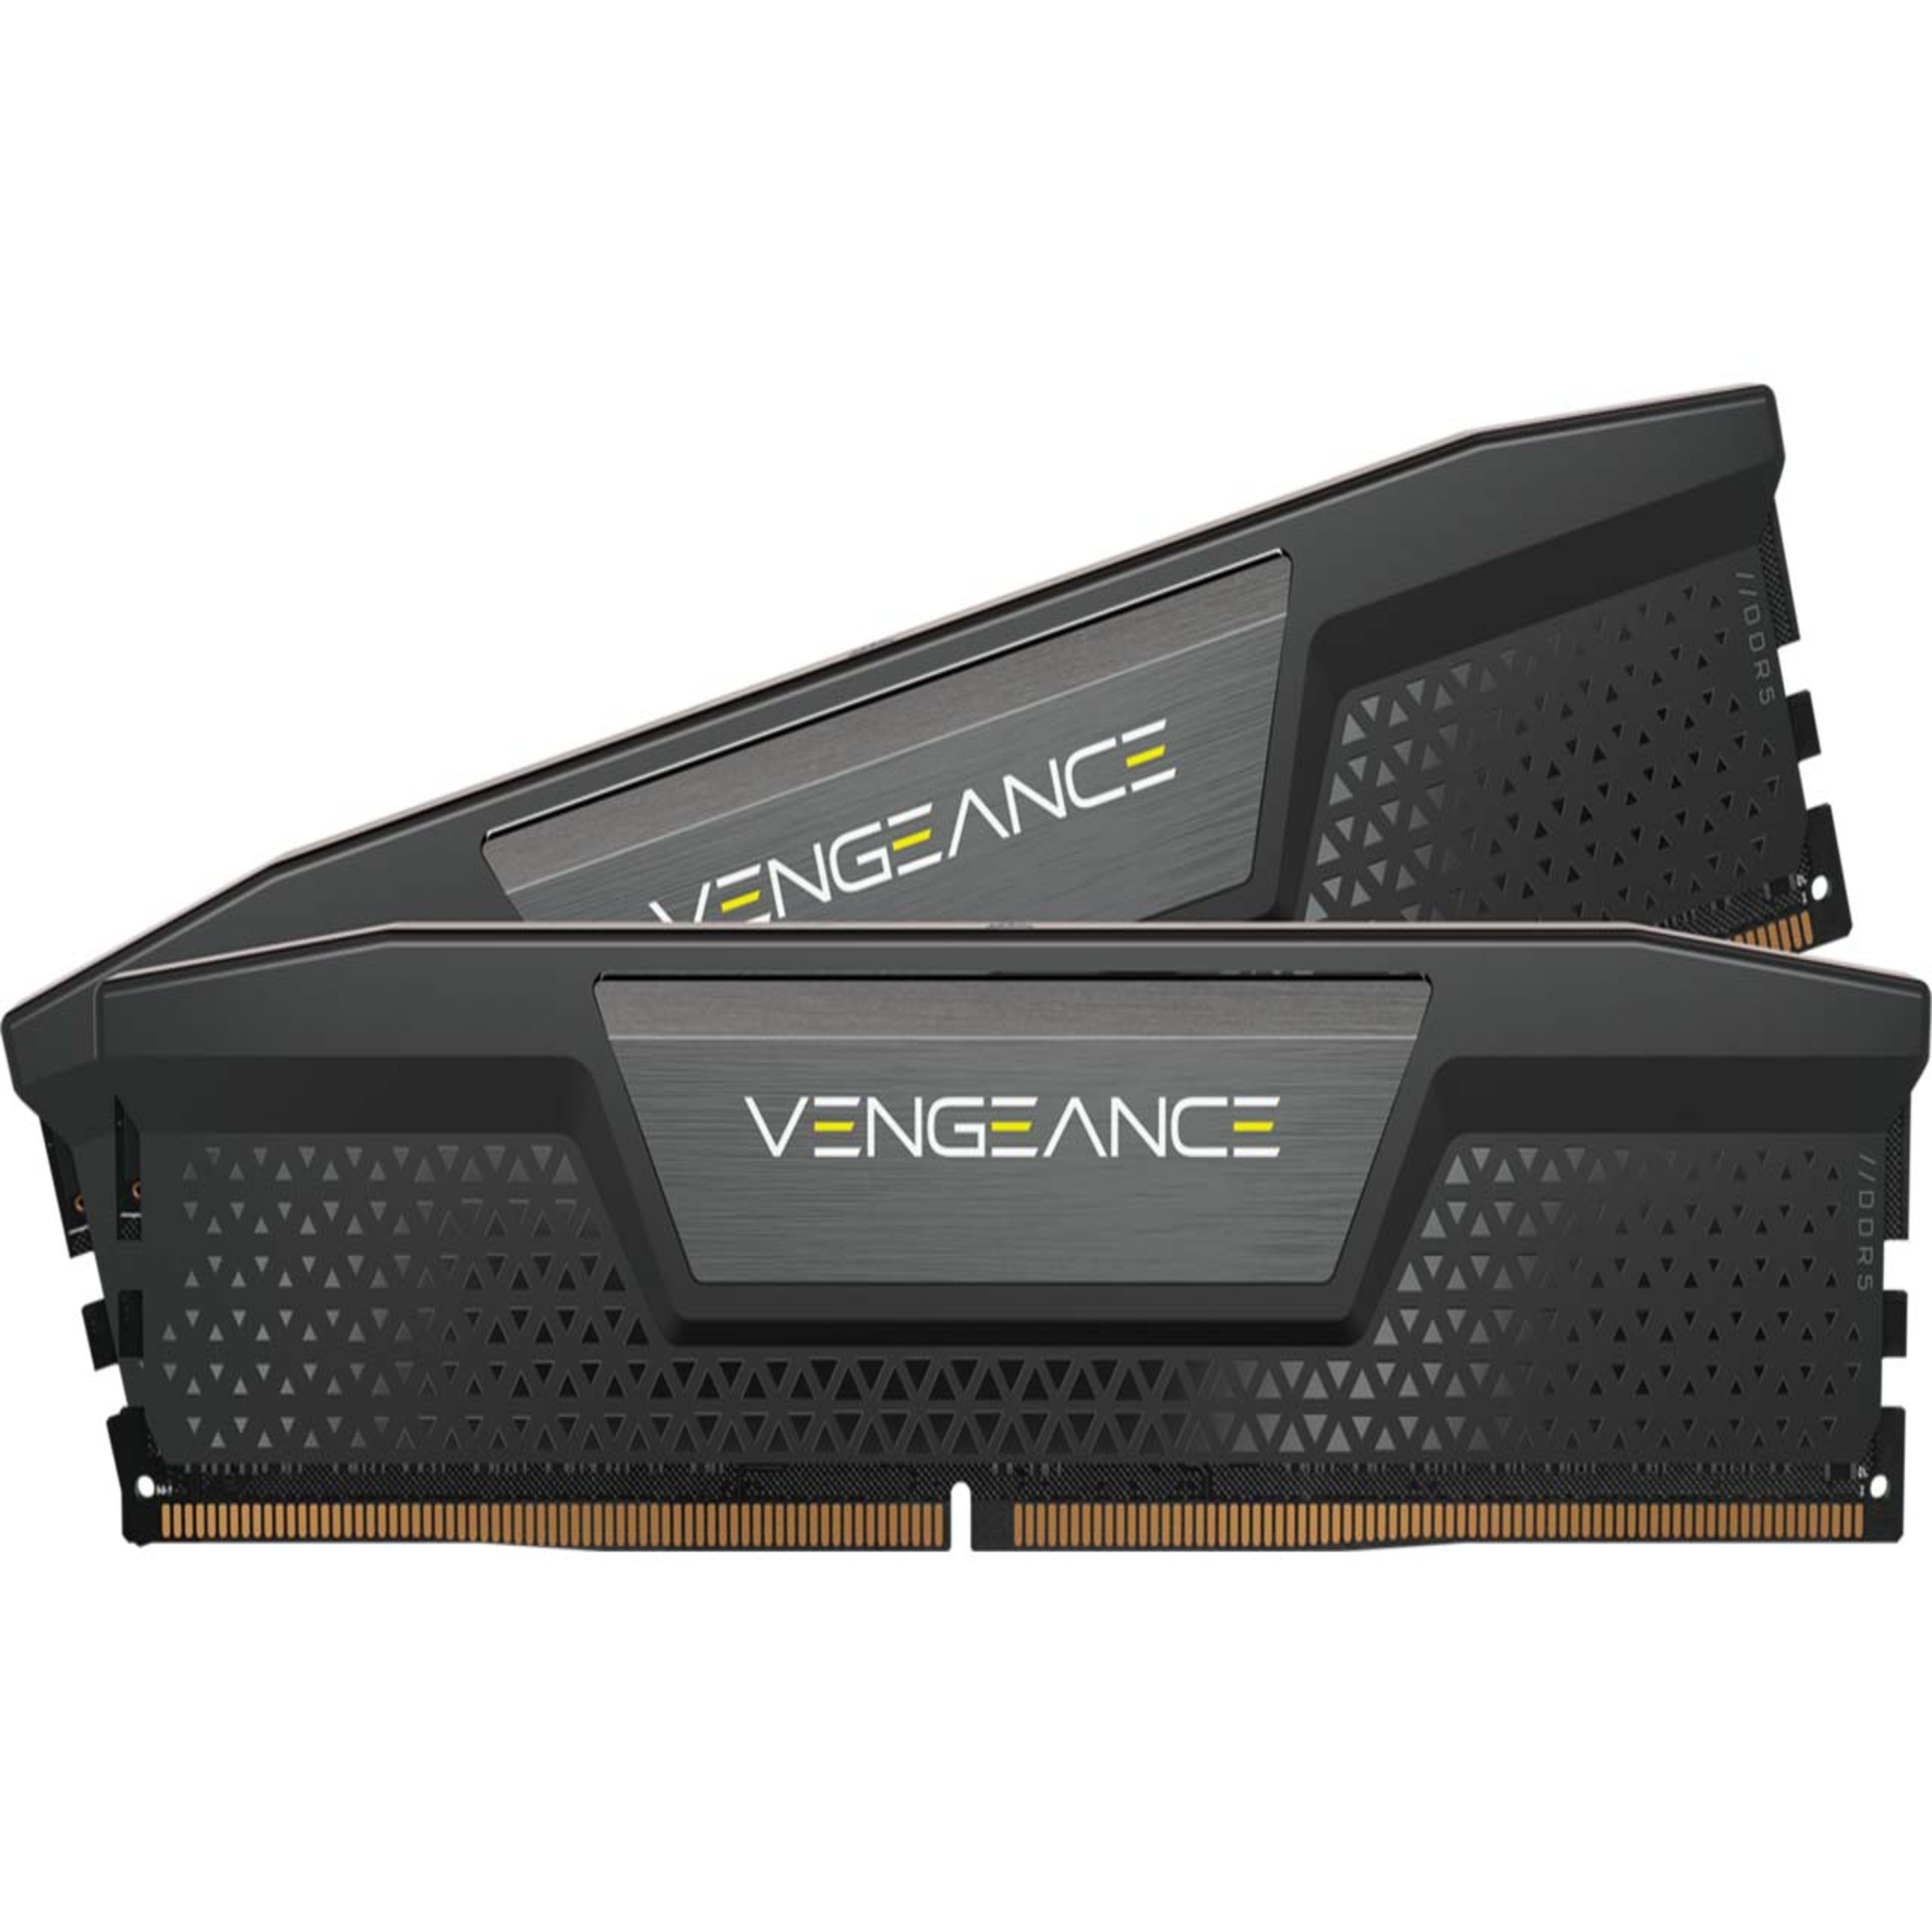 رم دسکتاپ DDR5 دو کاناله 4800 مگاهرتز کورسیر مدل VENGEANCE ظرفیت 32 گیگابایت